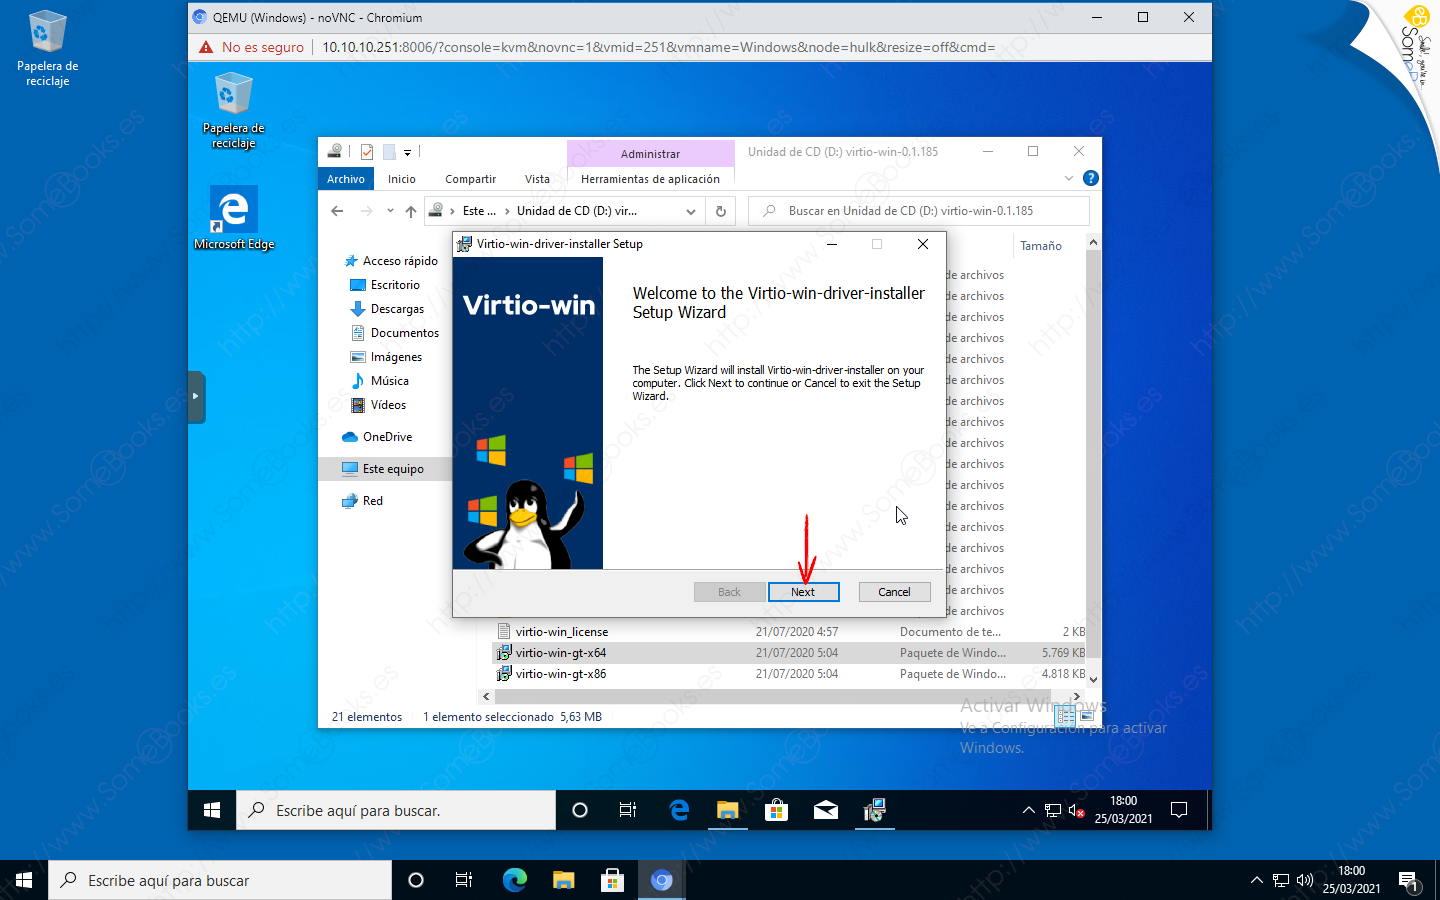 Instalar-Windows-10-en-una-maquina-virtual-sobre-Proxmox-VE-020